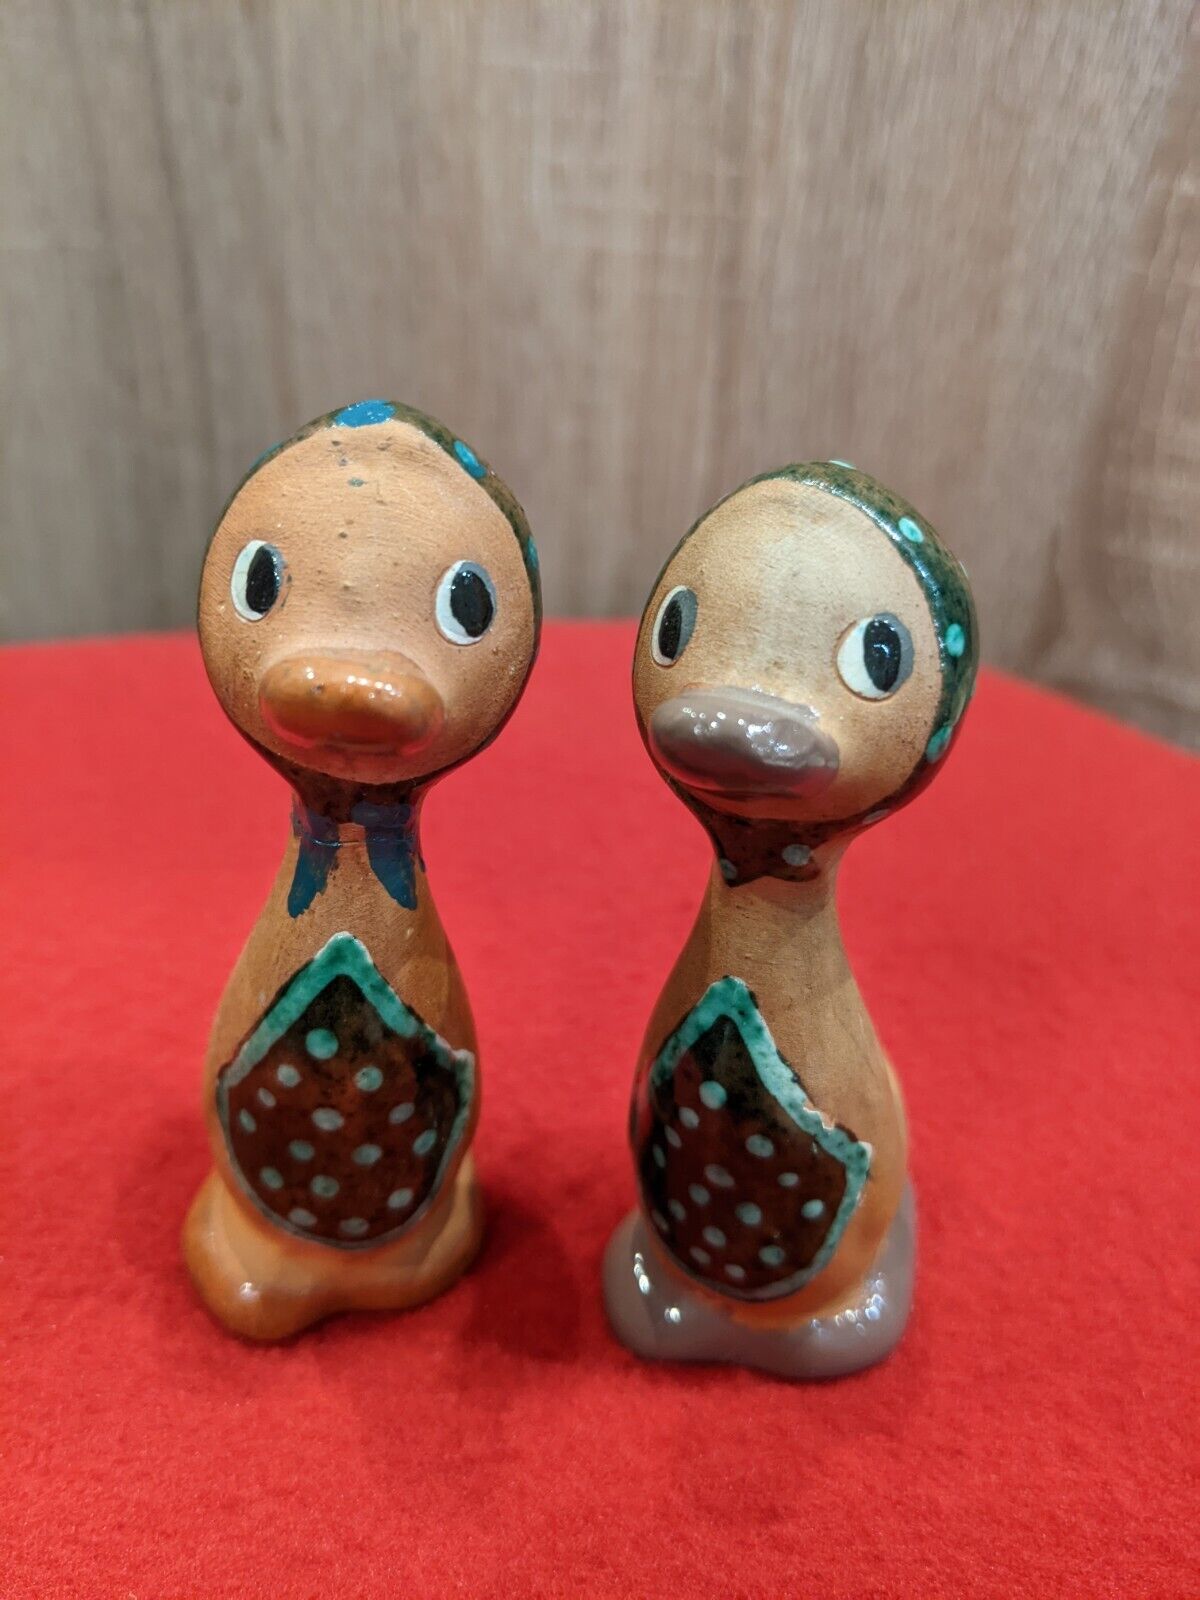 Vintage Figurines Ducks Made of Clay - Folk Art of Ukraine - Handmade Ceramics